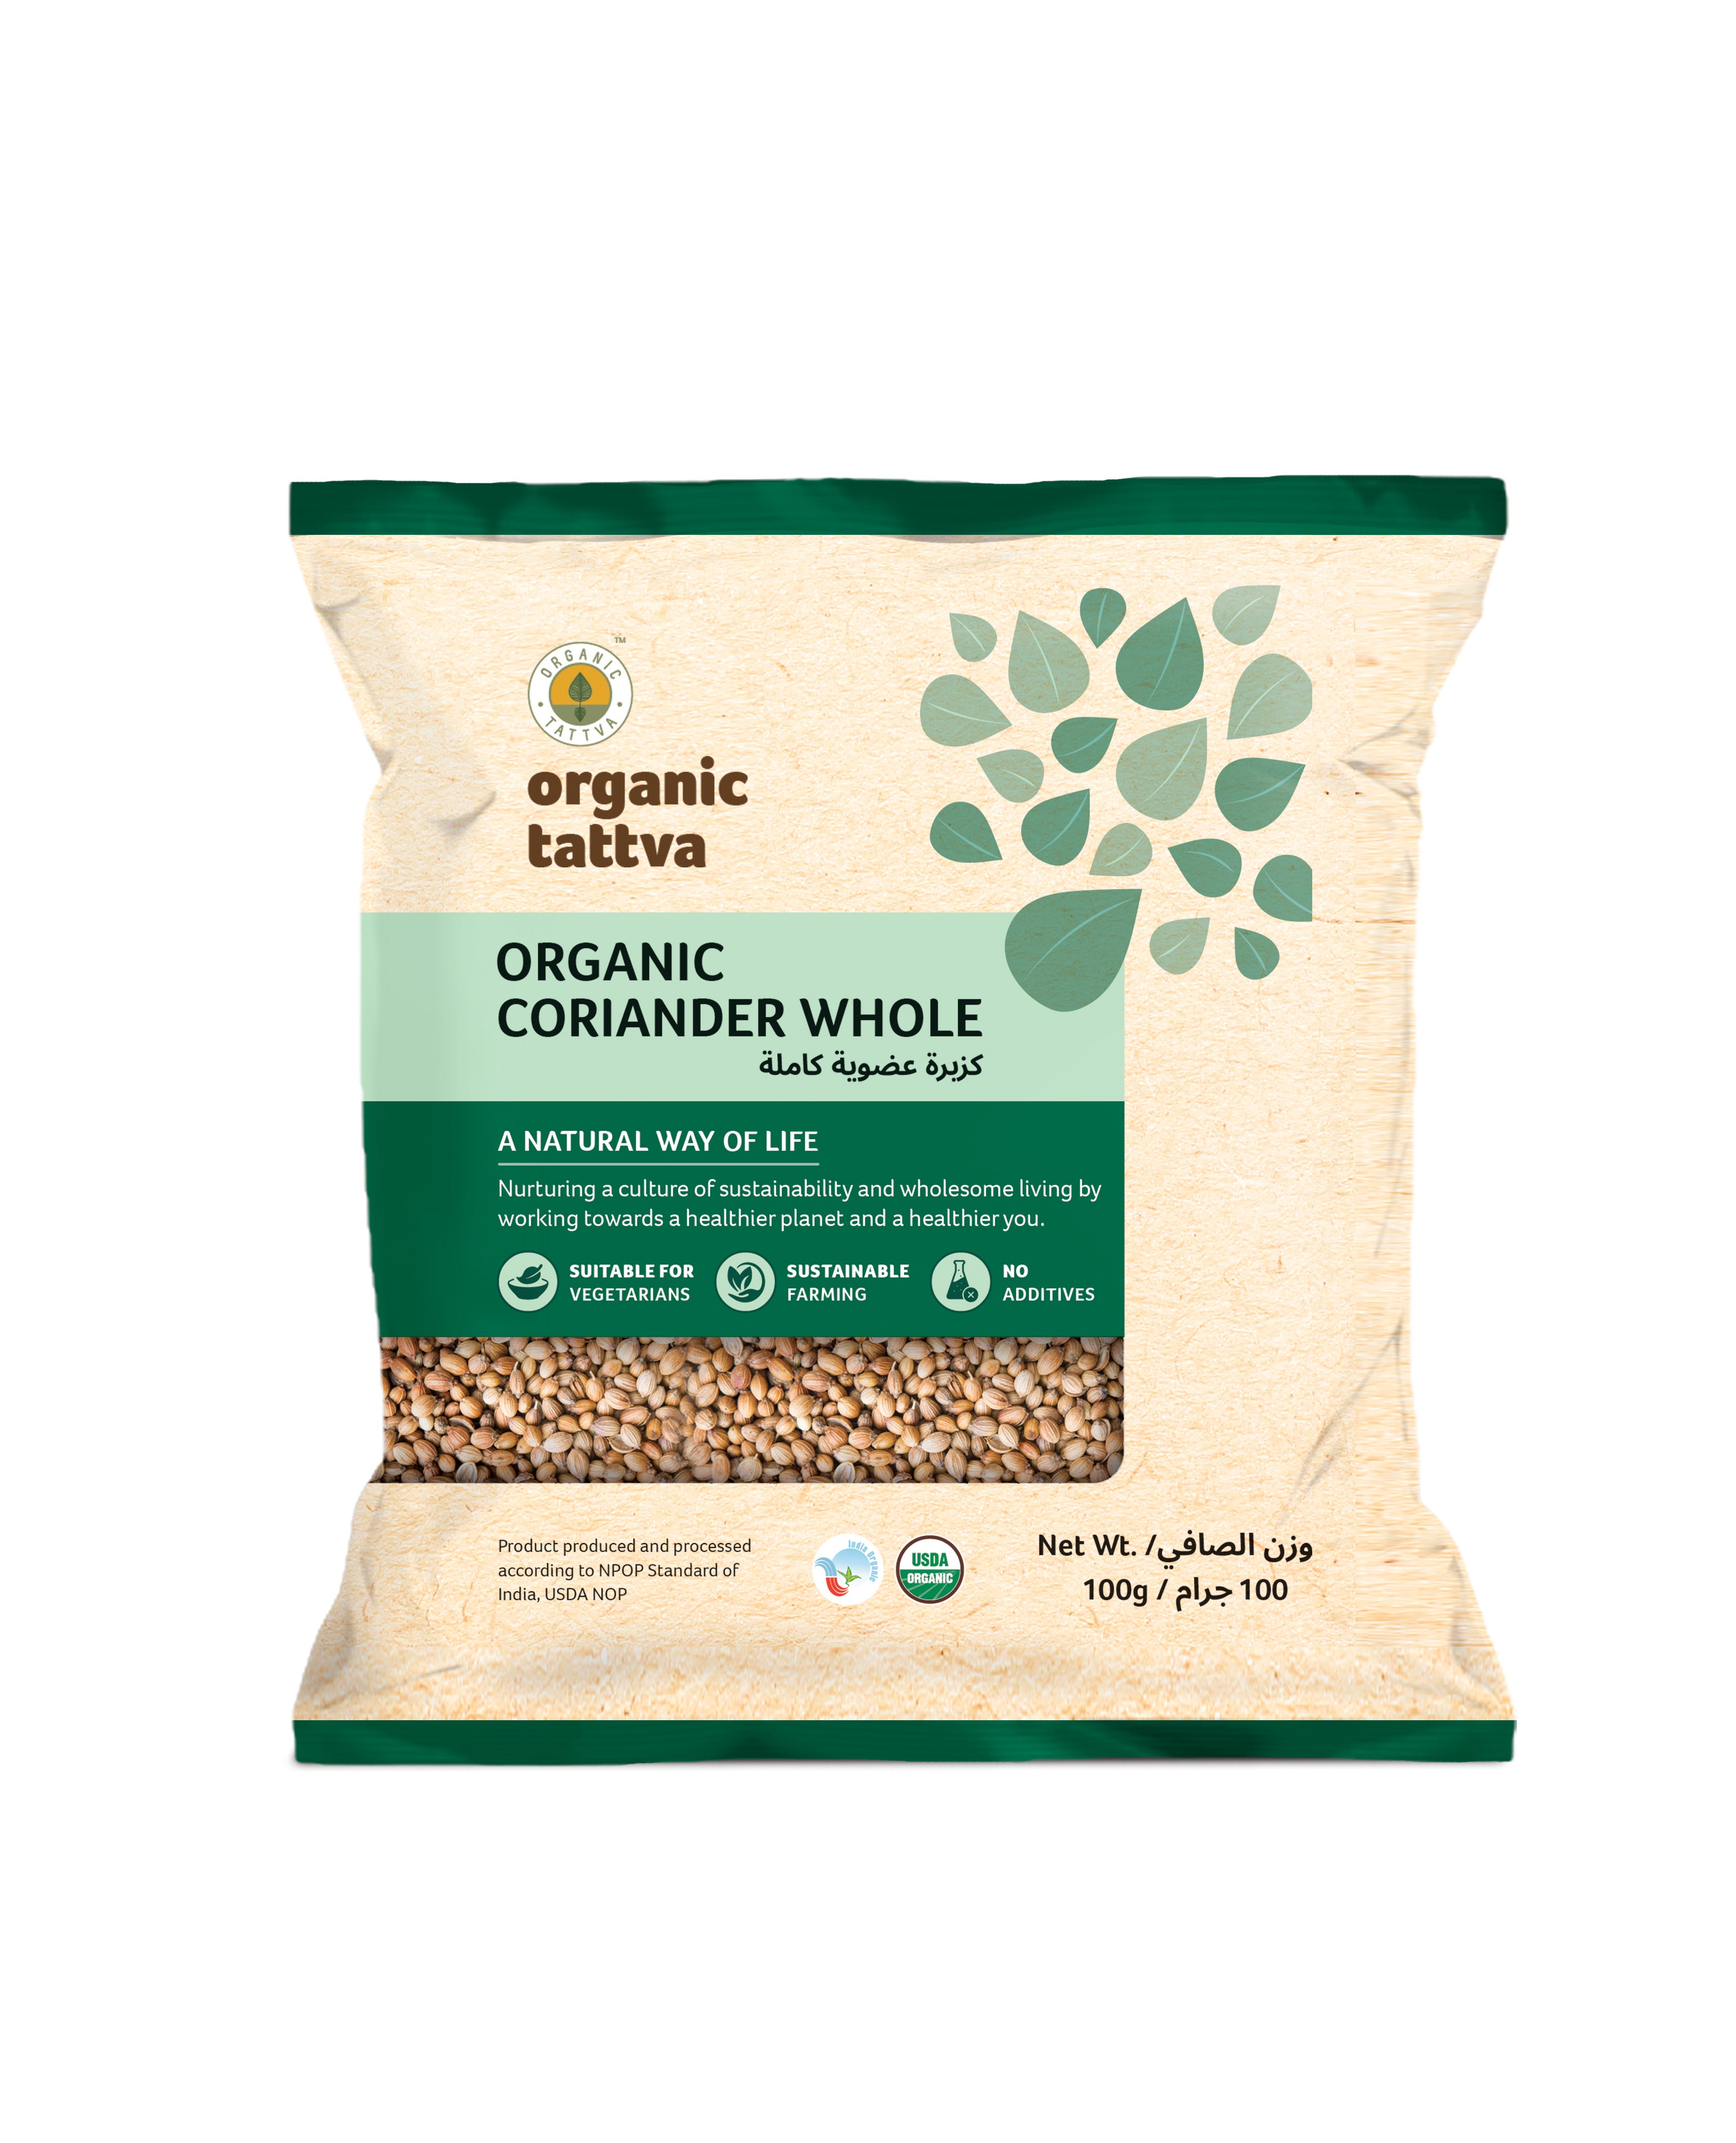 ORGANIC TATTAVA Organic Coriander Whole, 100g - Organic, Vegan